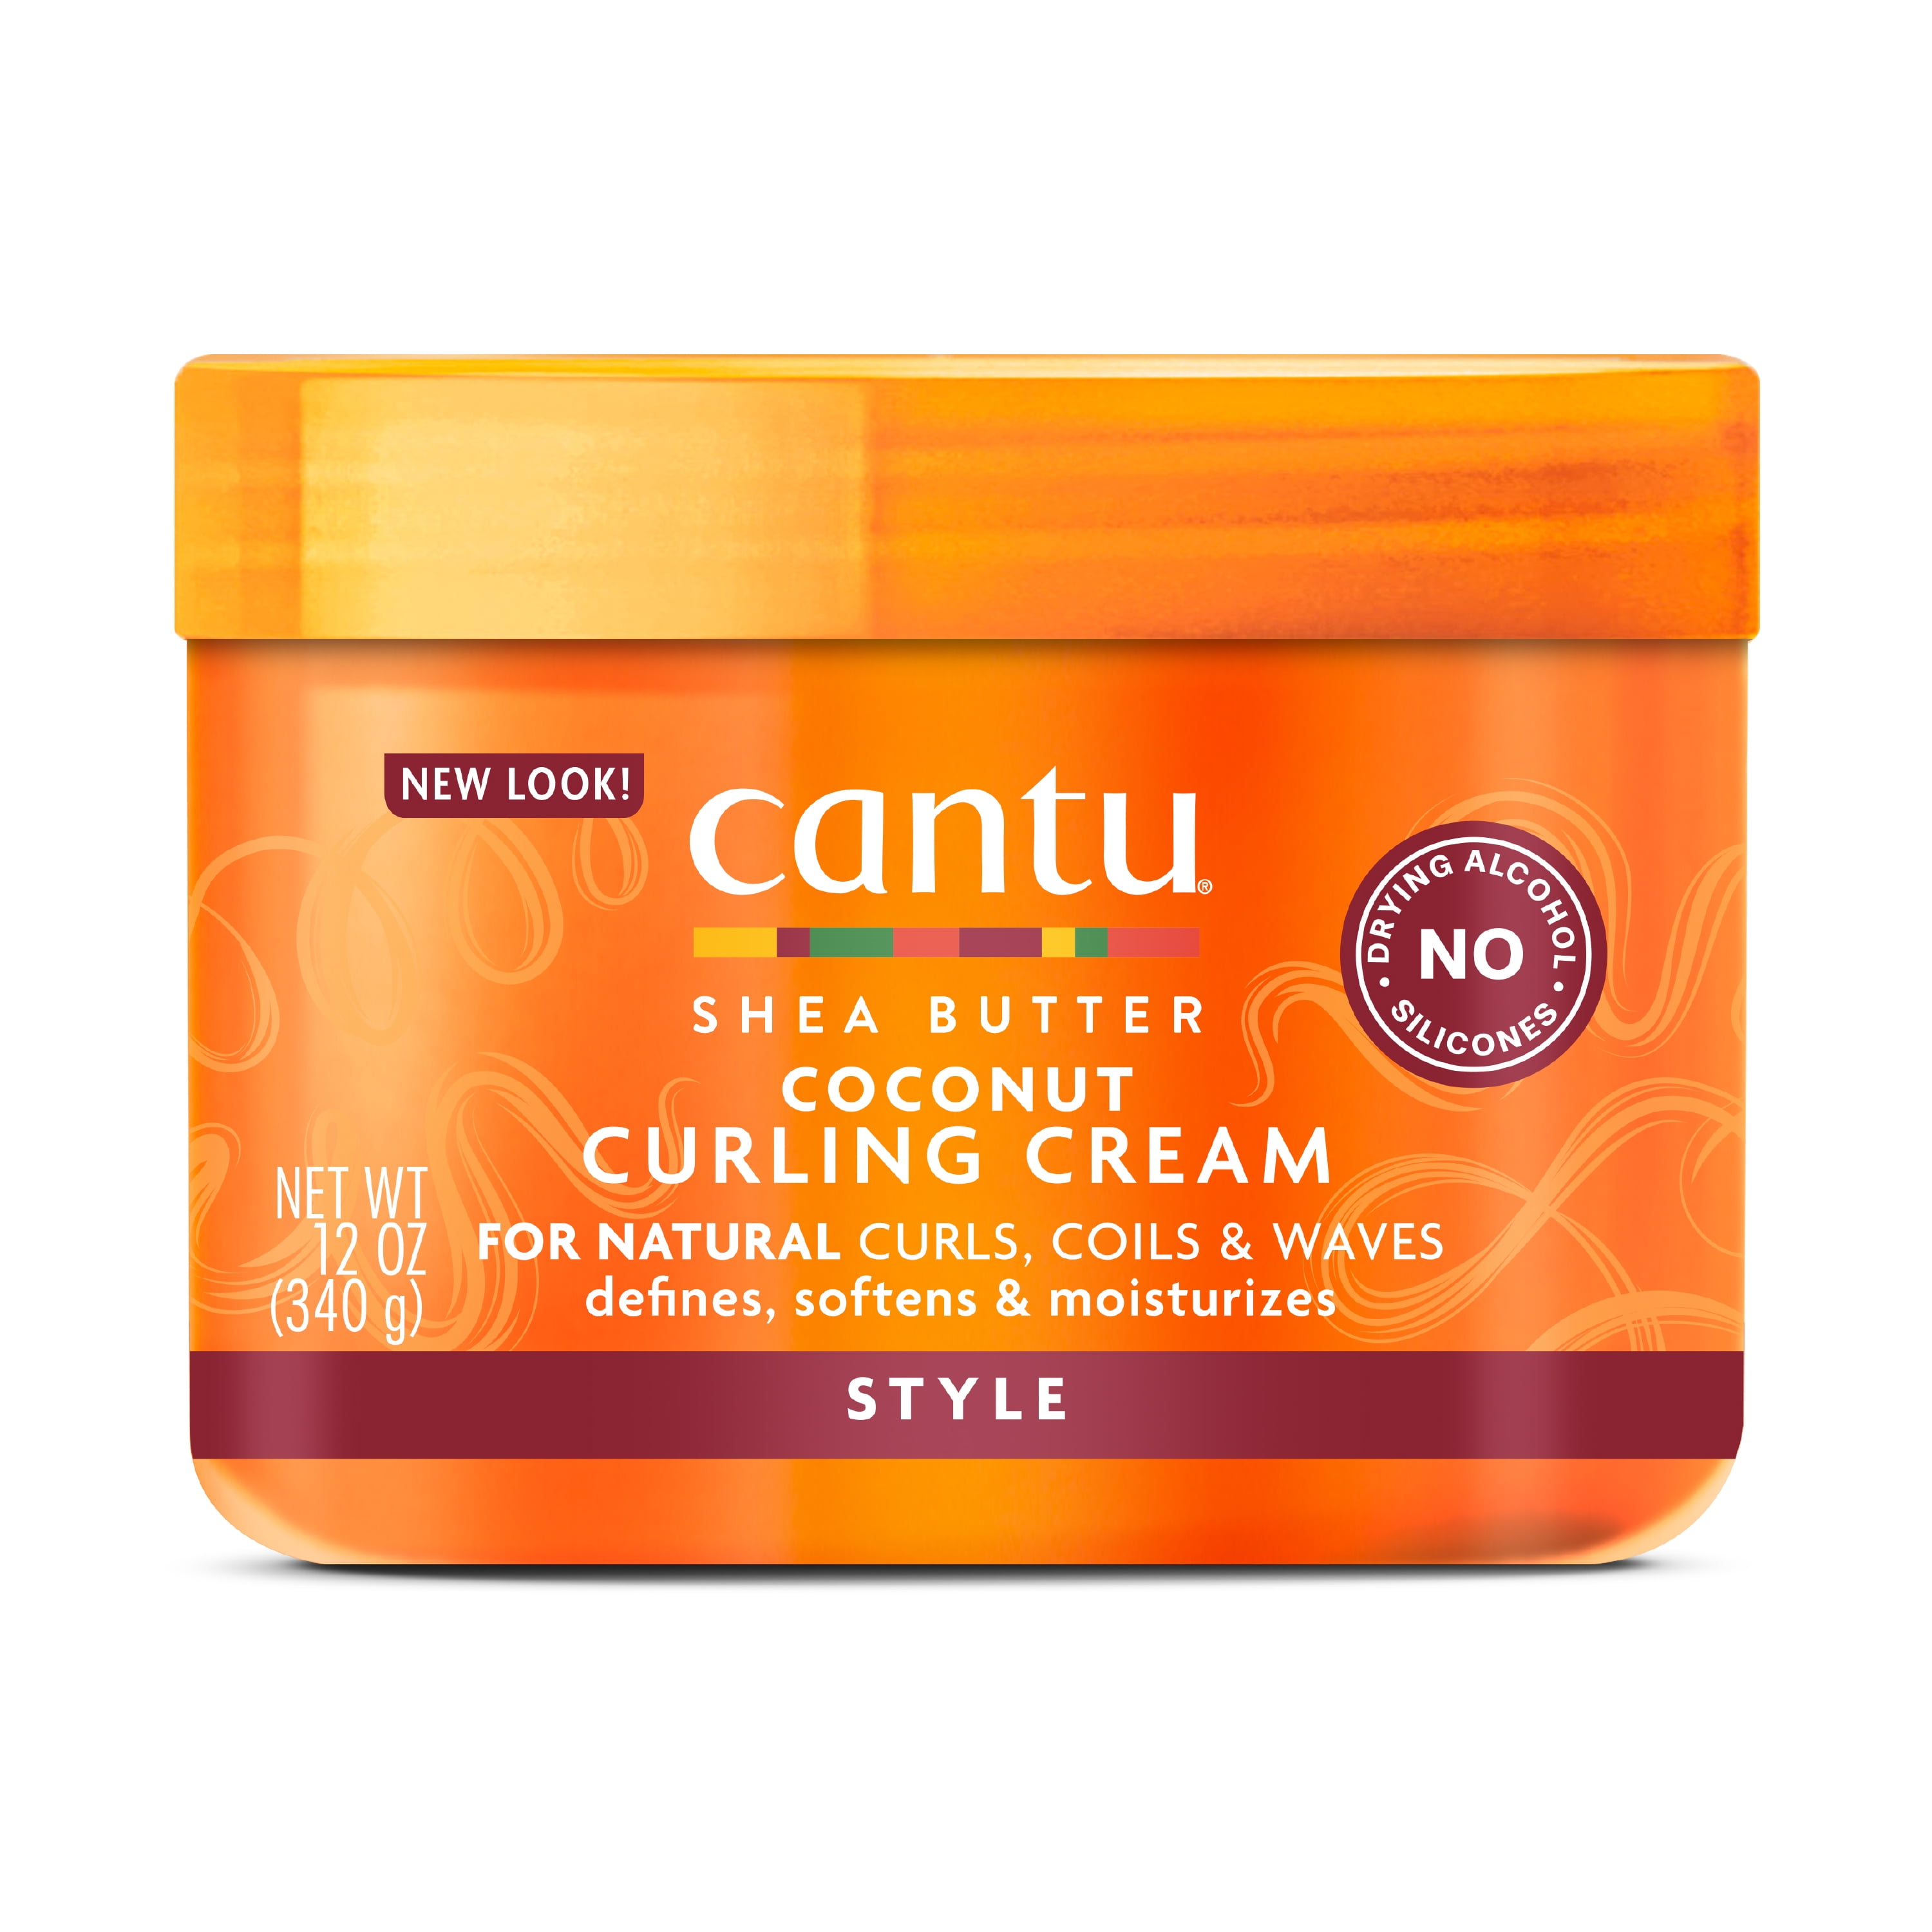 Cantu Coconut Curling Cream with Shea Butter, 12 fl oz - Walmart.com